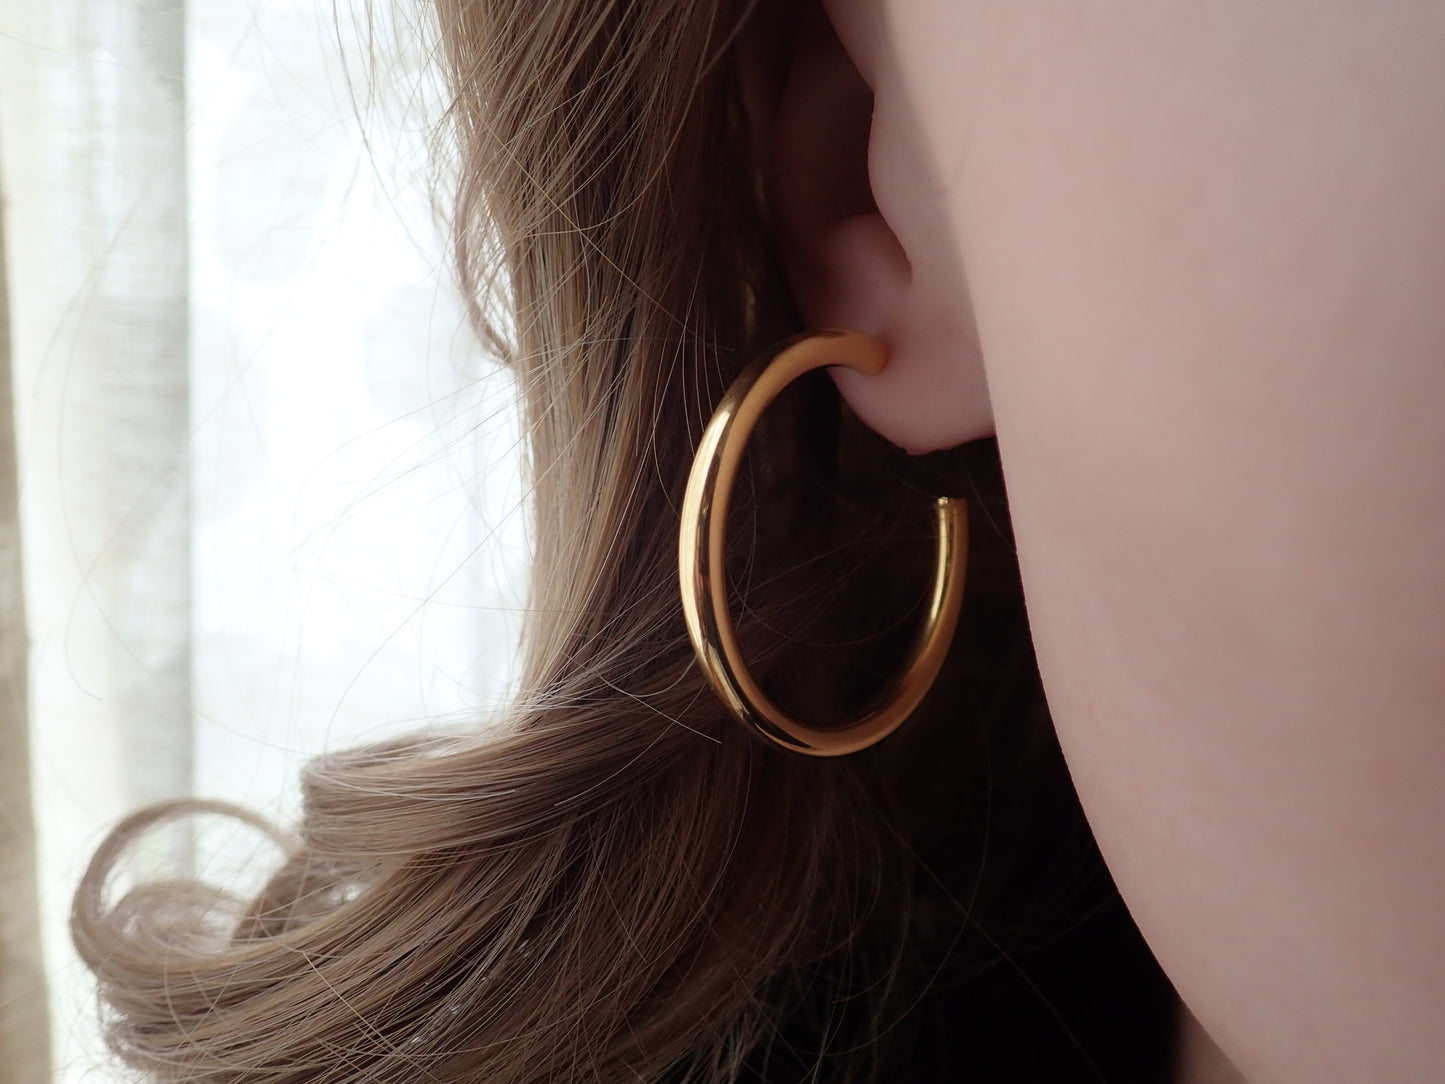 Huron Waterproof Gold Hoop Earrings